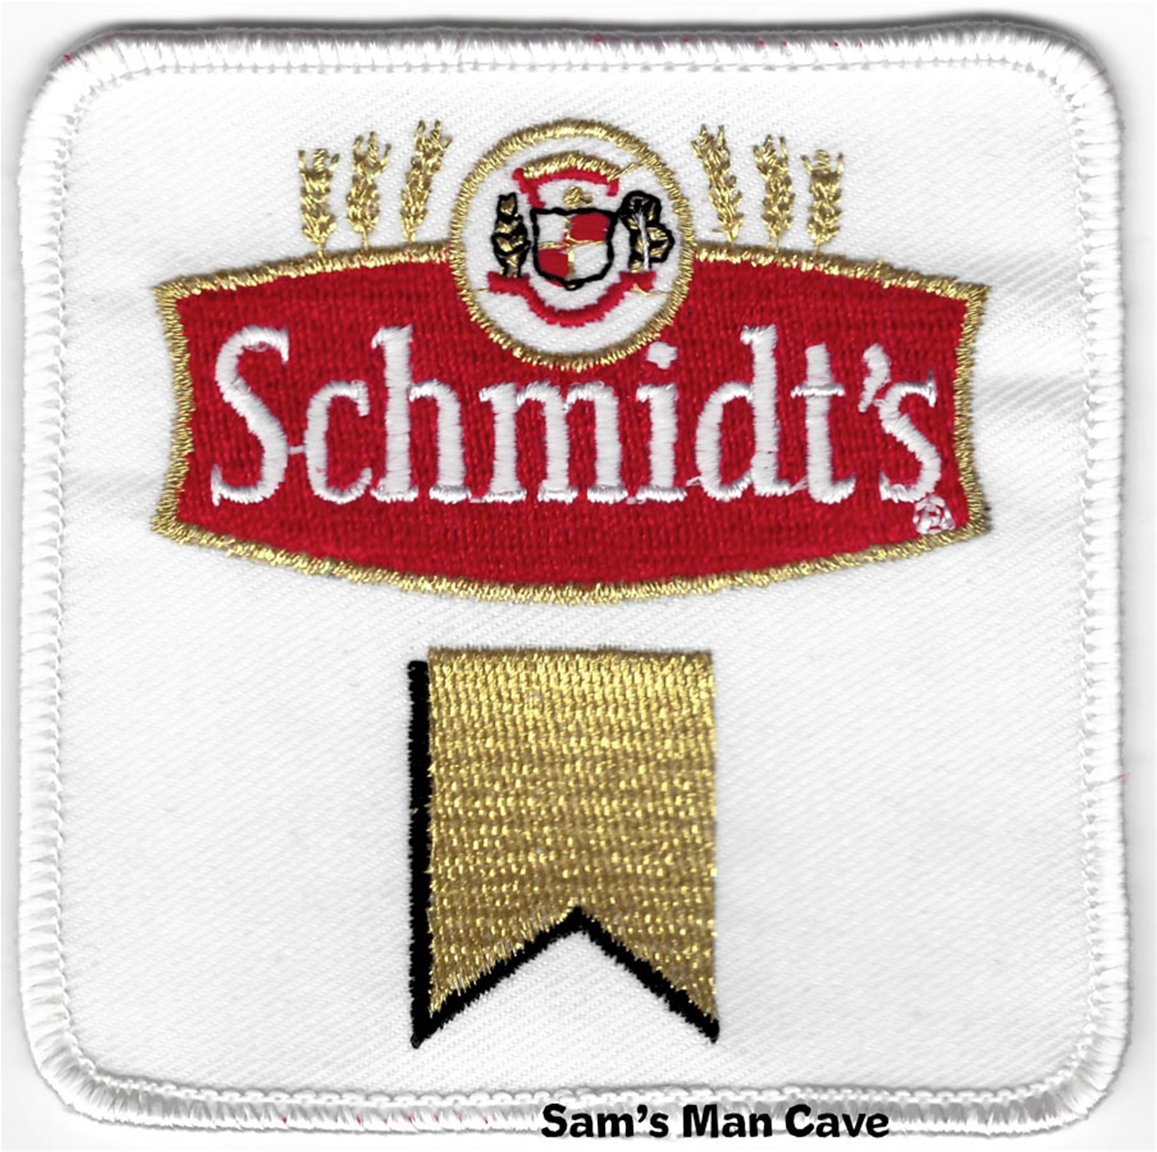 Schmidt's Beer Patch